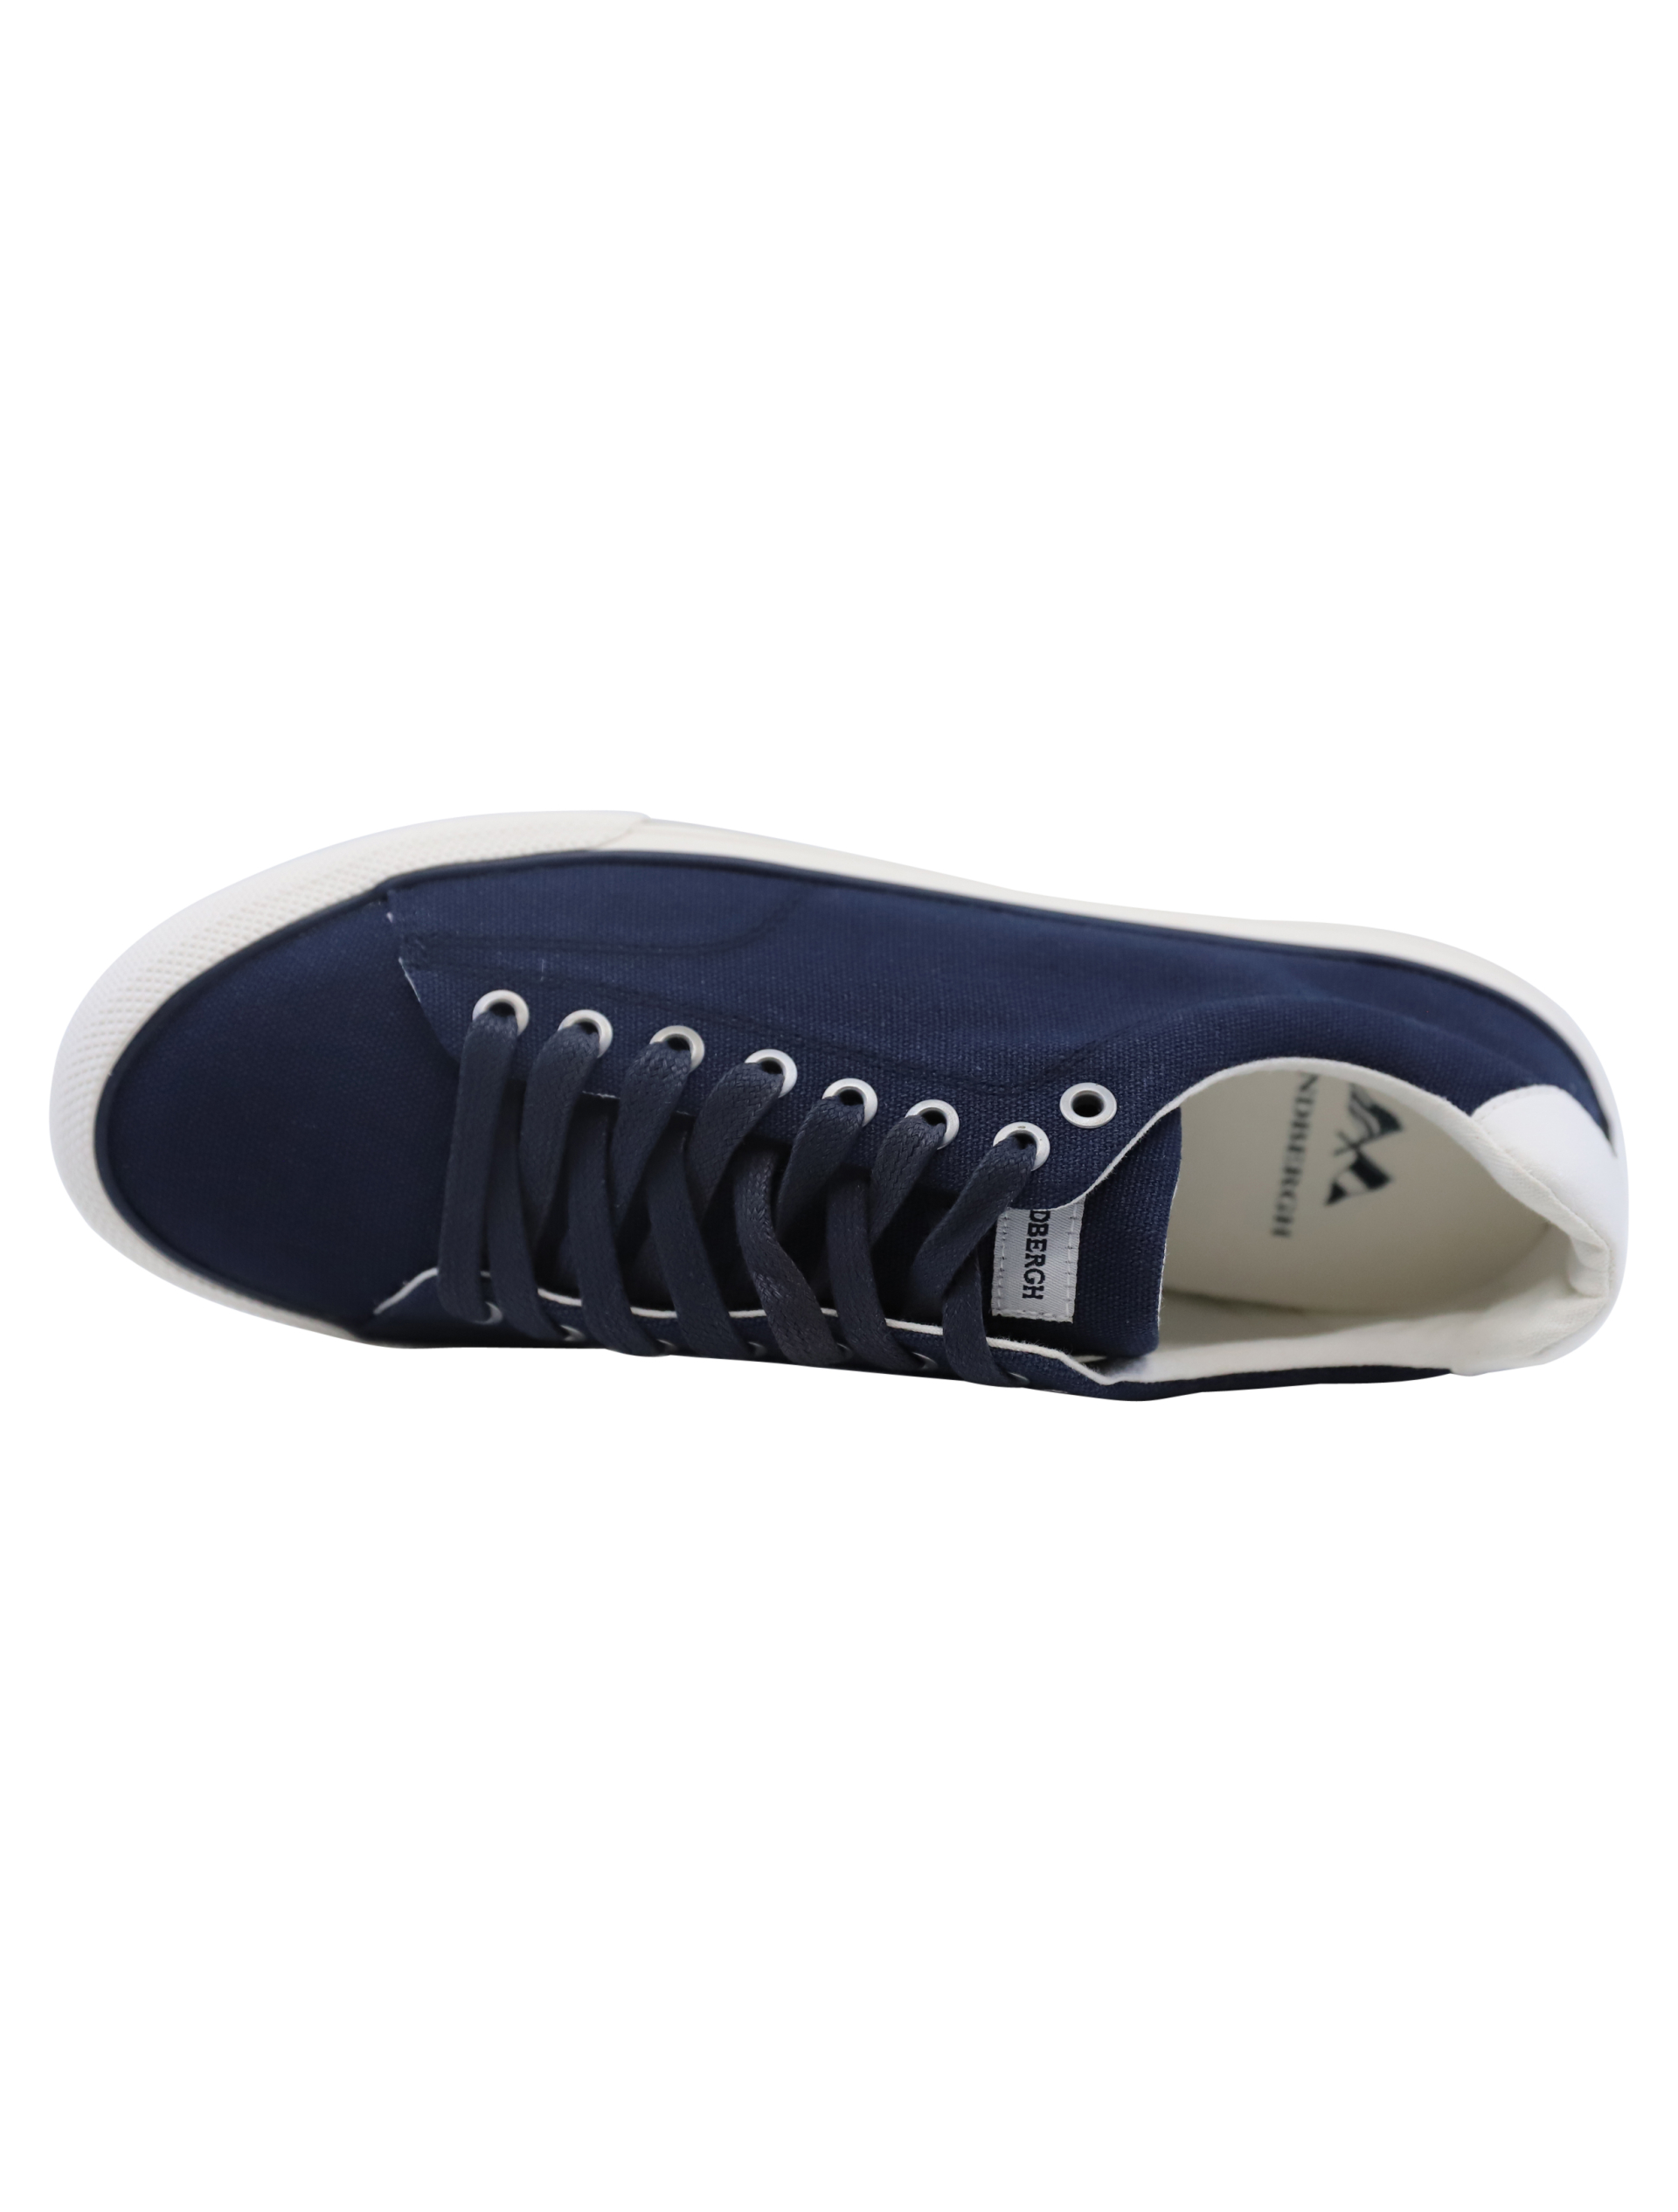 Lindbergh Sneakers blue / navy